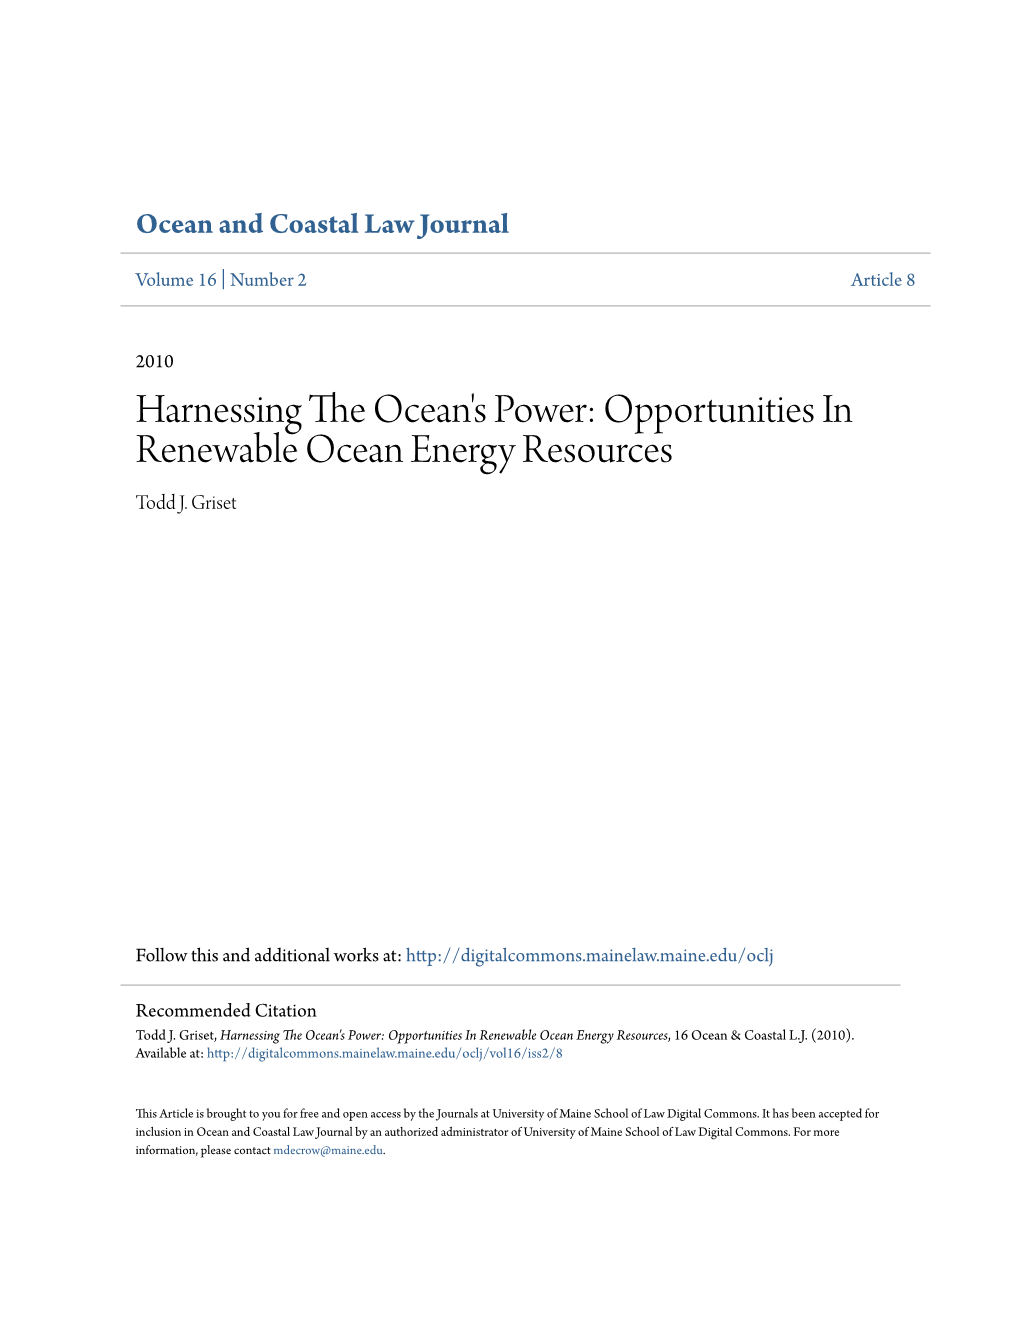 Opportunities in Renewable Ocean Energy Resources Todd J